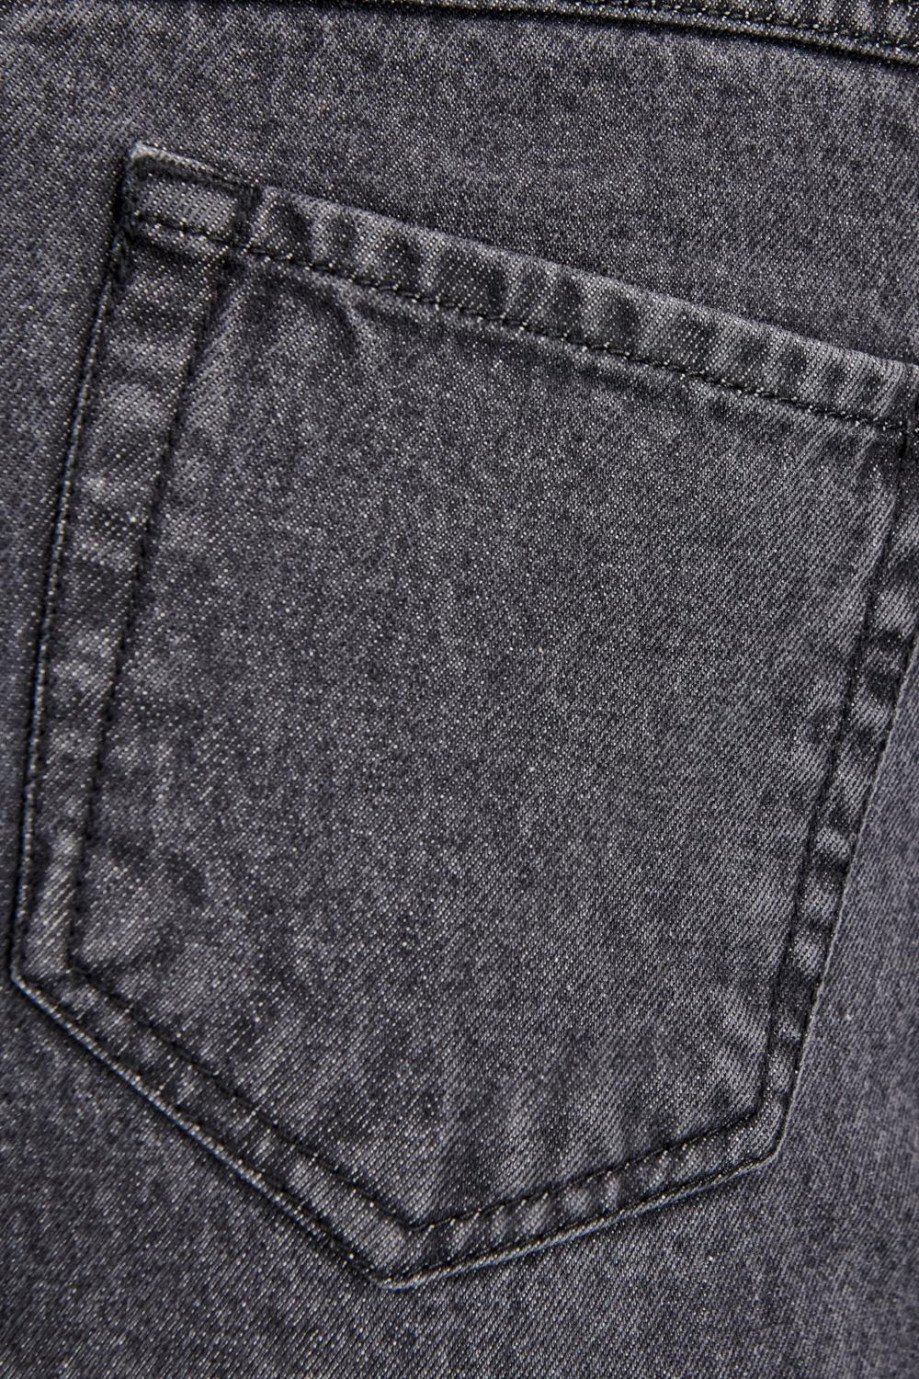 Jean 90´S tiro alto gris oscuro con botas anchas y 5 bolsillos